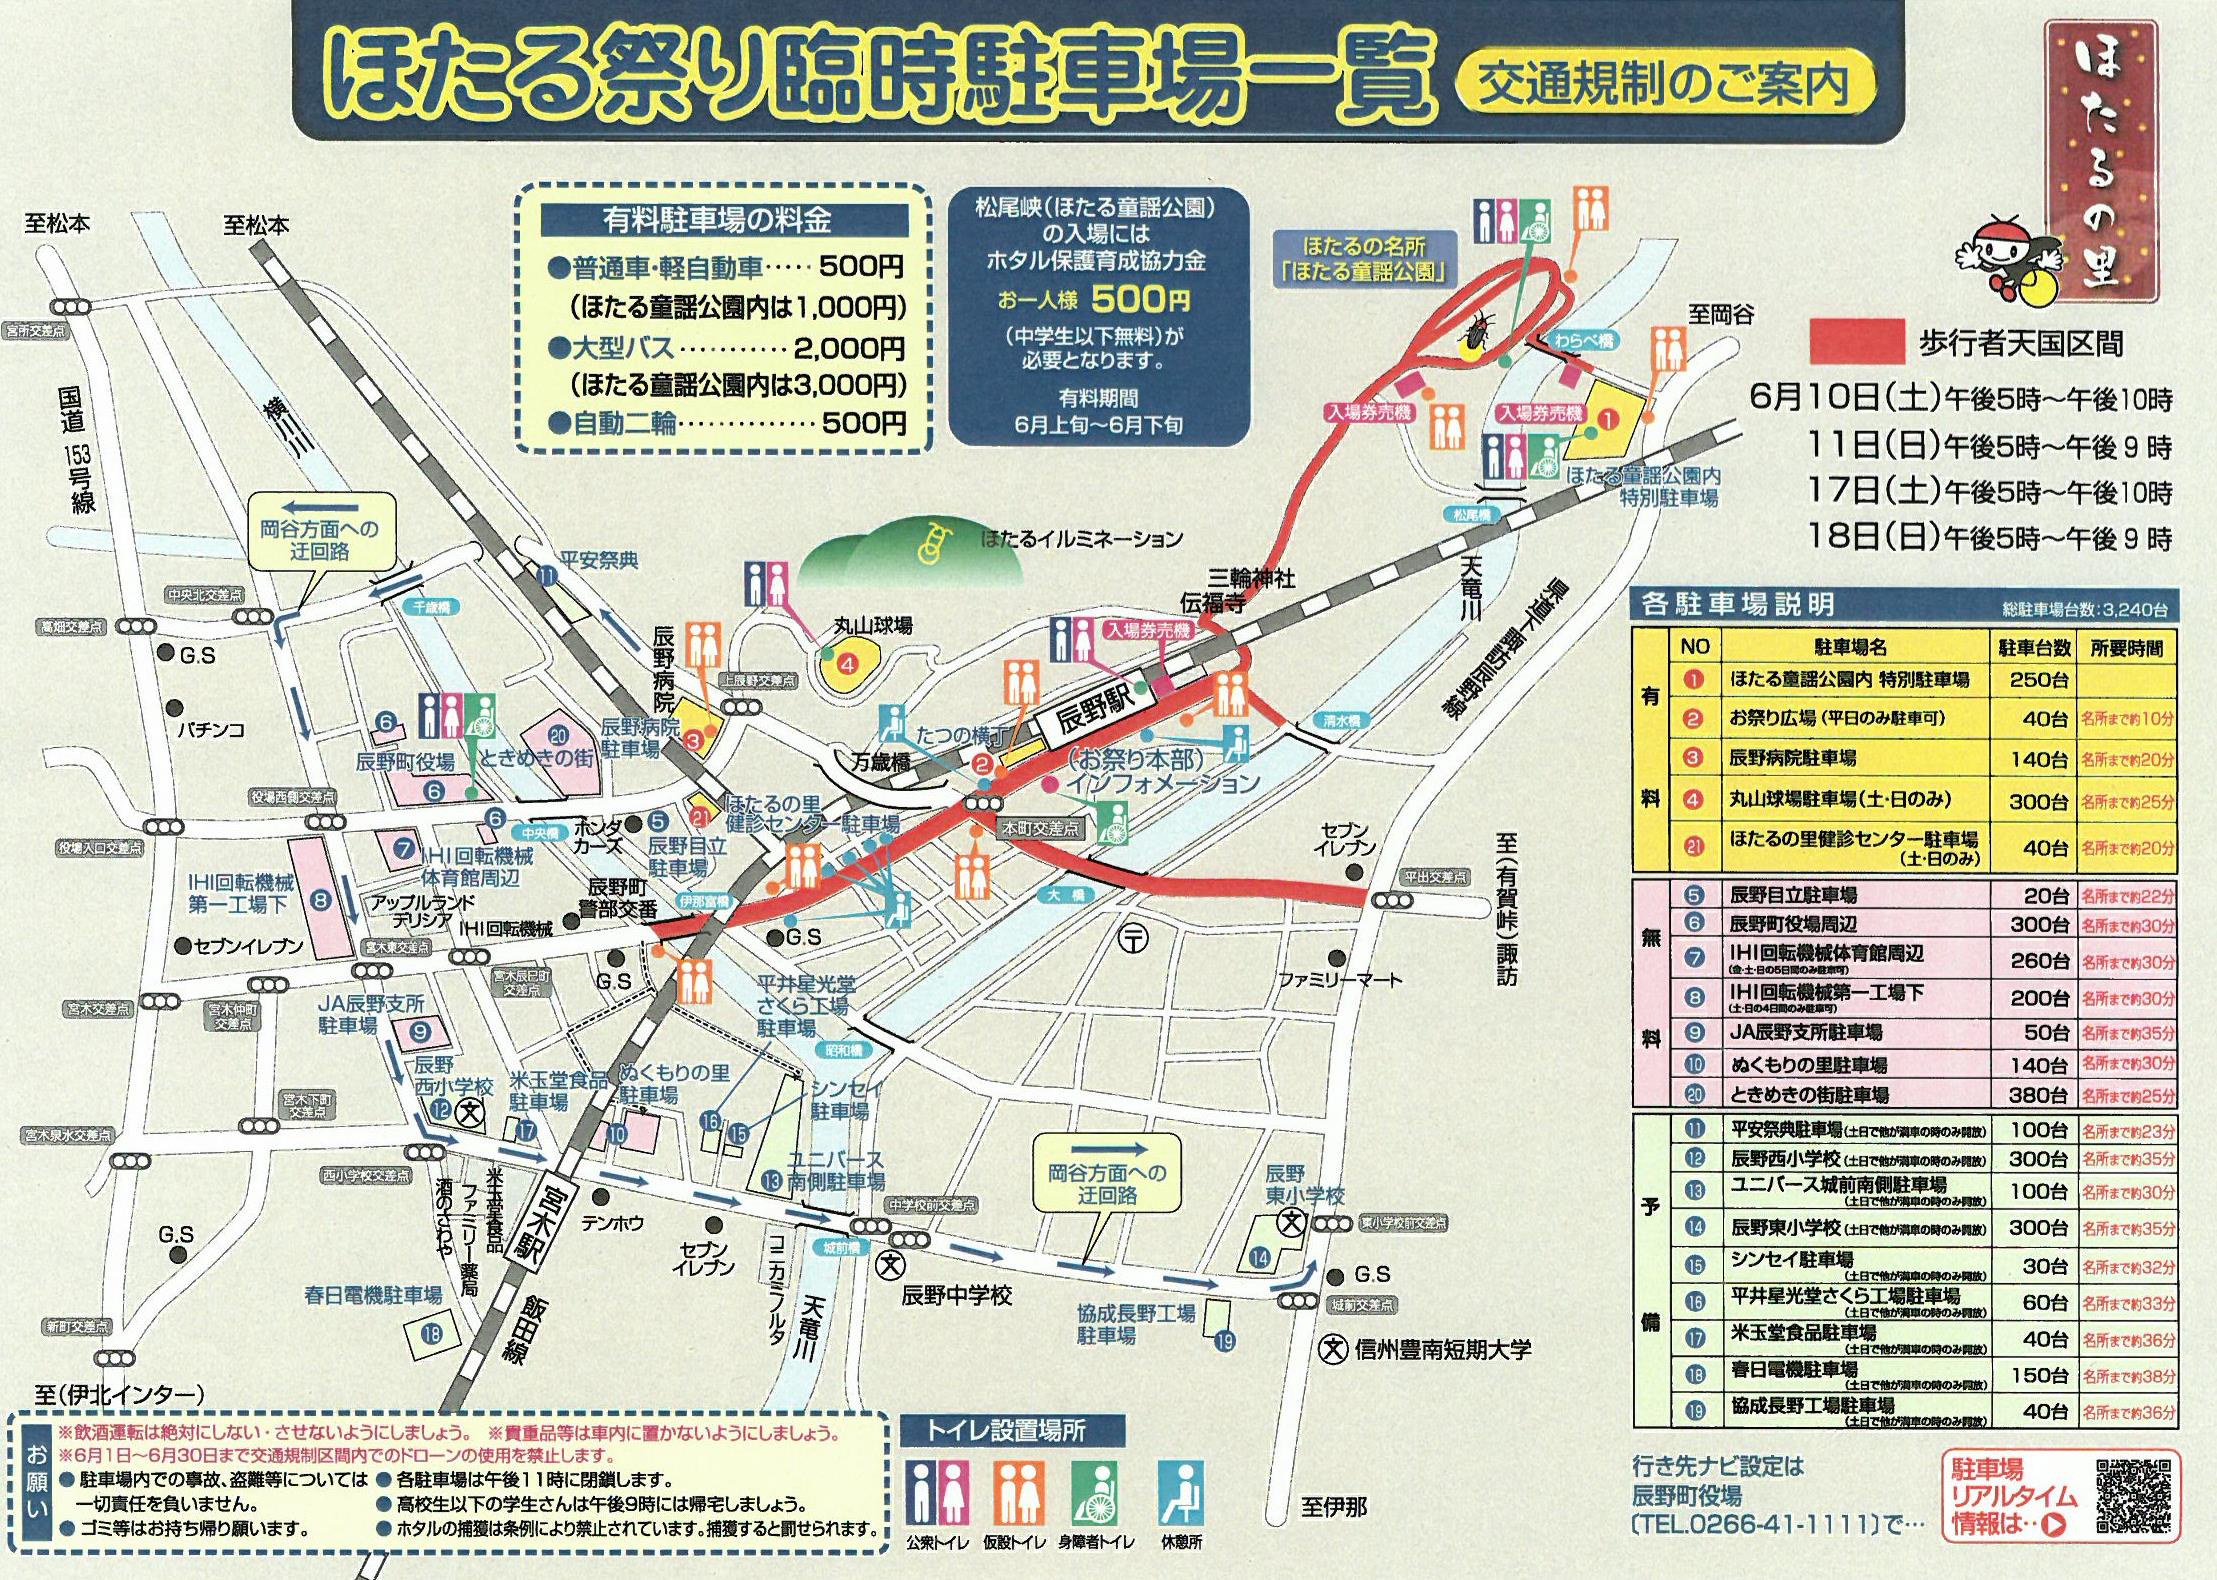 辰野ほたる祭り18 蛍の発生状況は 臨時列車や駐車場とアクセス方法について